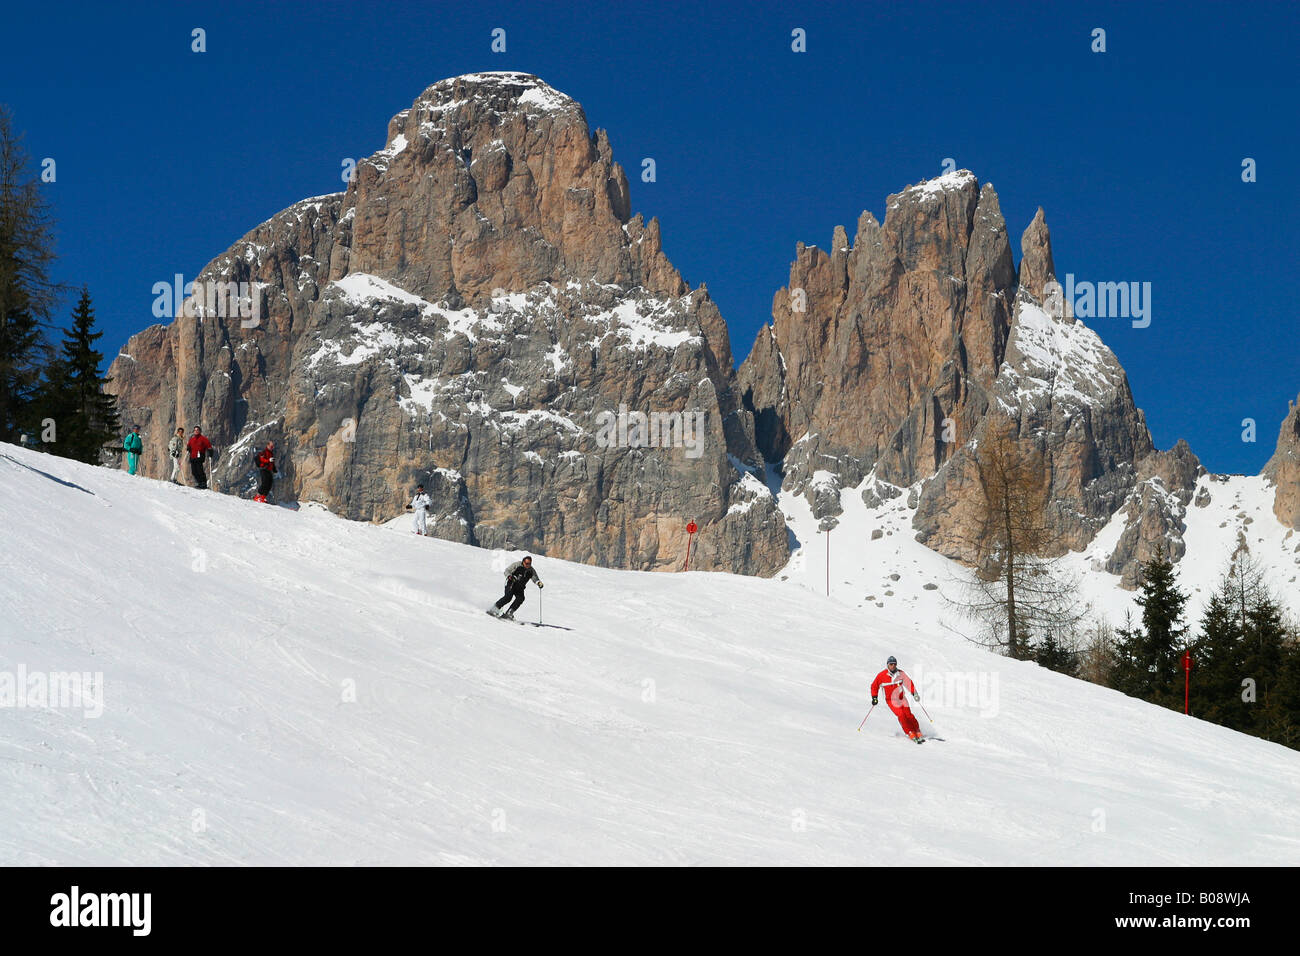 Gruppo Lankofel (indietro) e sciatori sulle piste del comprensorio sciistico Campitello-col Rodella, Canazei, Val di Fassa, Trentino, Italia Foto Stock